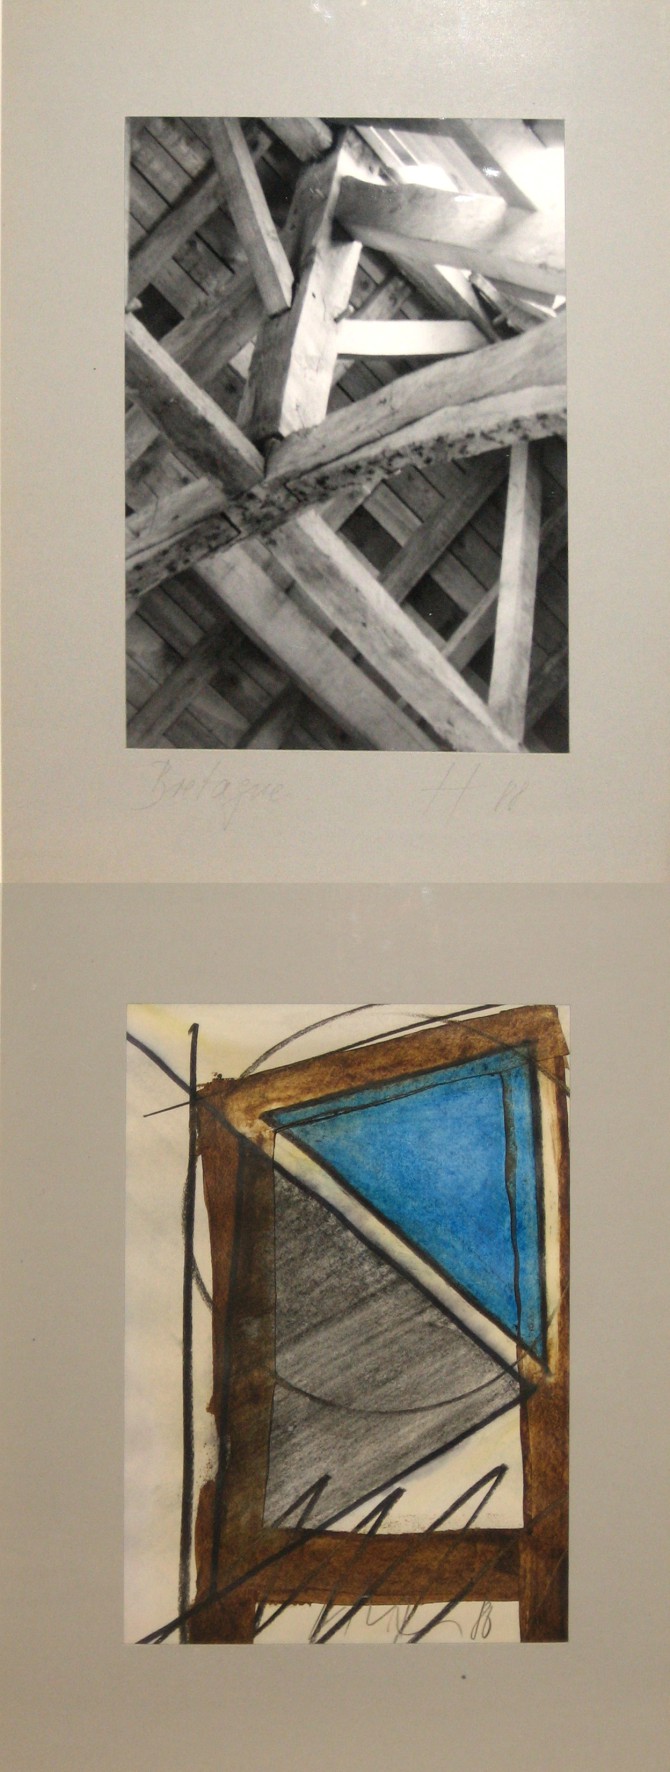 Edgar Hofschen - Bretagne, 1988, Buch mit 2 Fotos und 2 Gouachen, 34 x 25 cm, 5-20